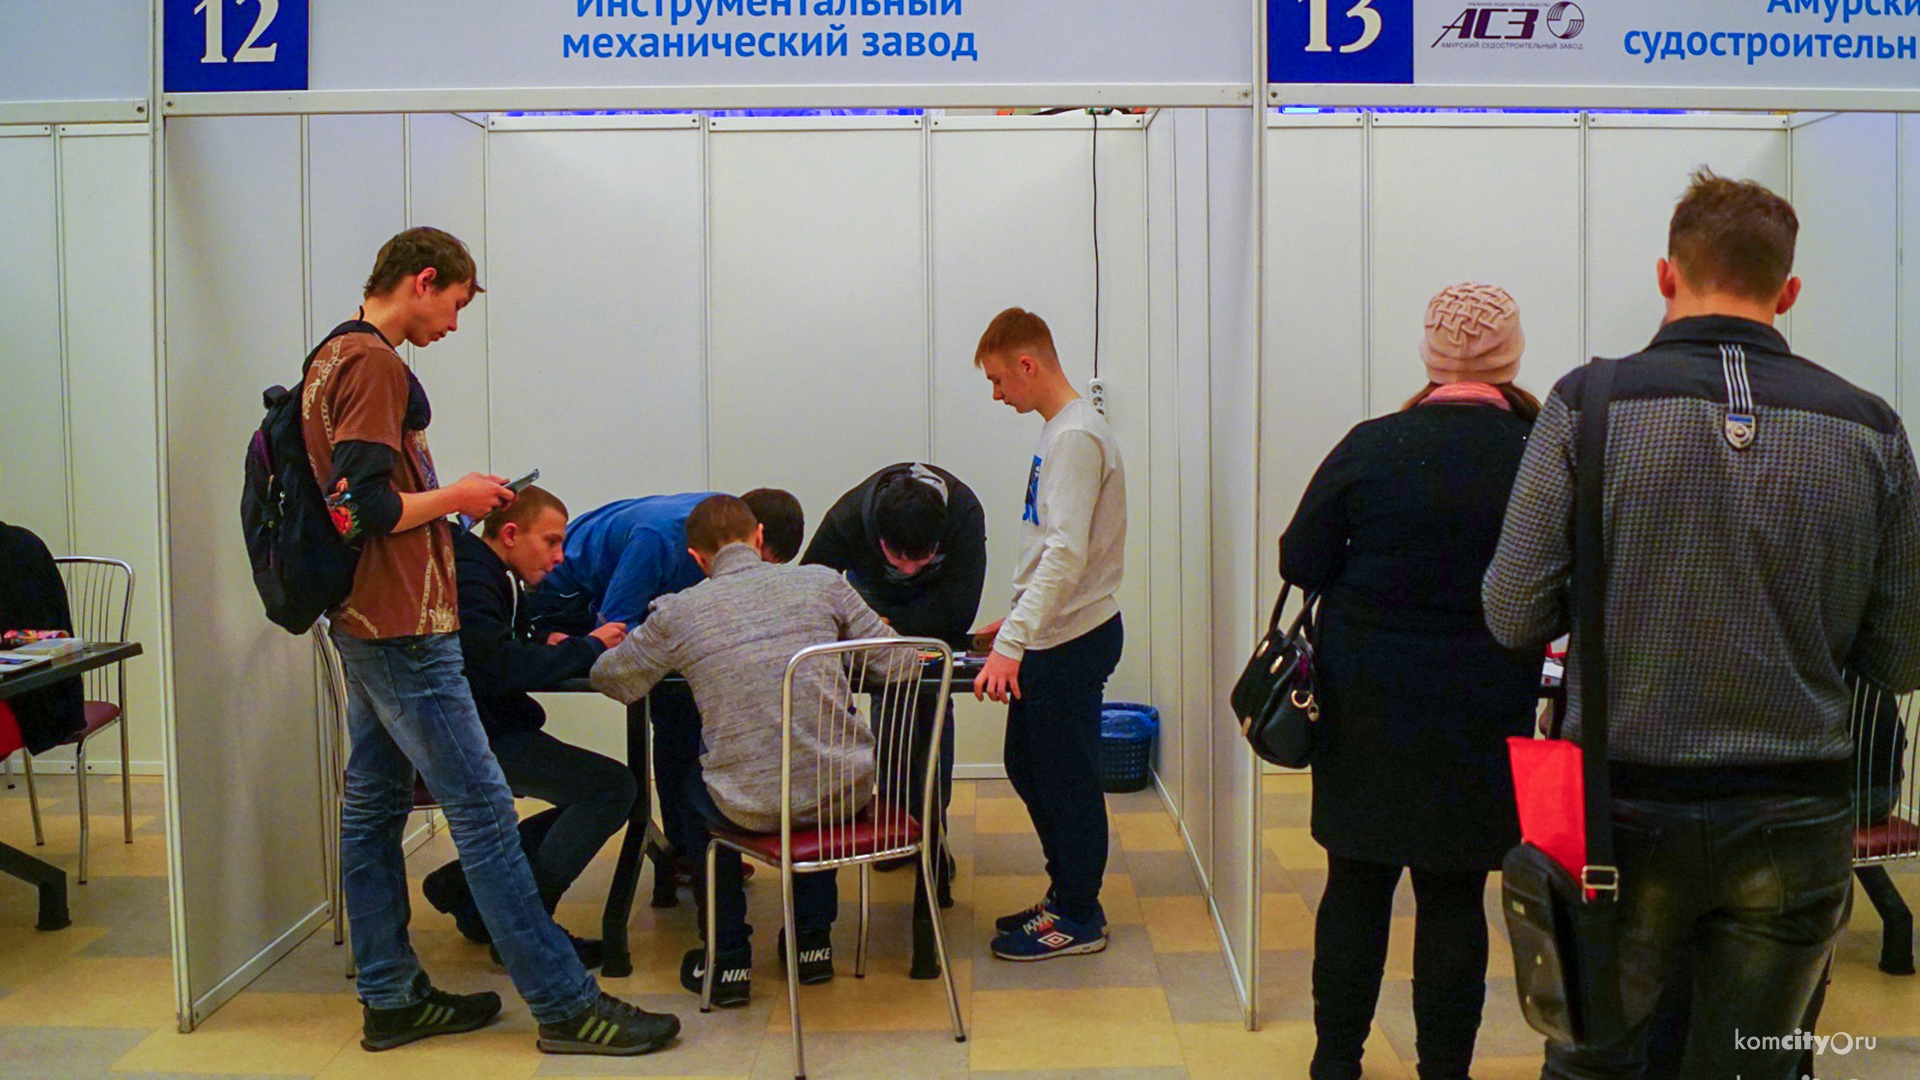 Официальный уровень безработицы в Комсомольске вернулся к допандемийным значениям